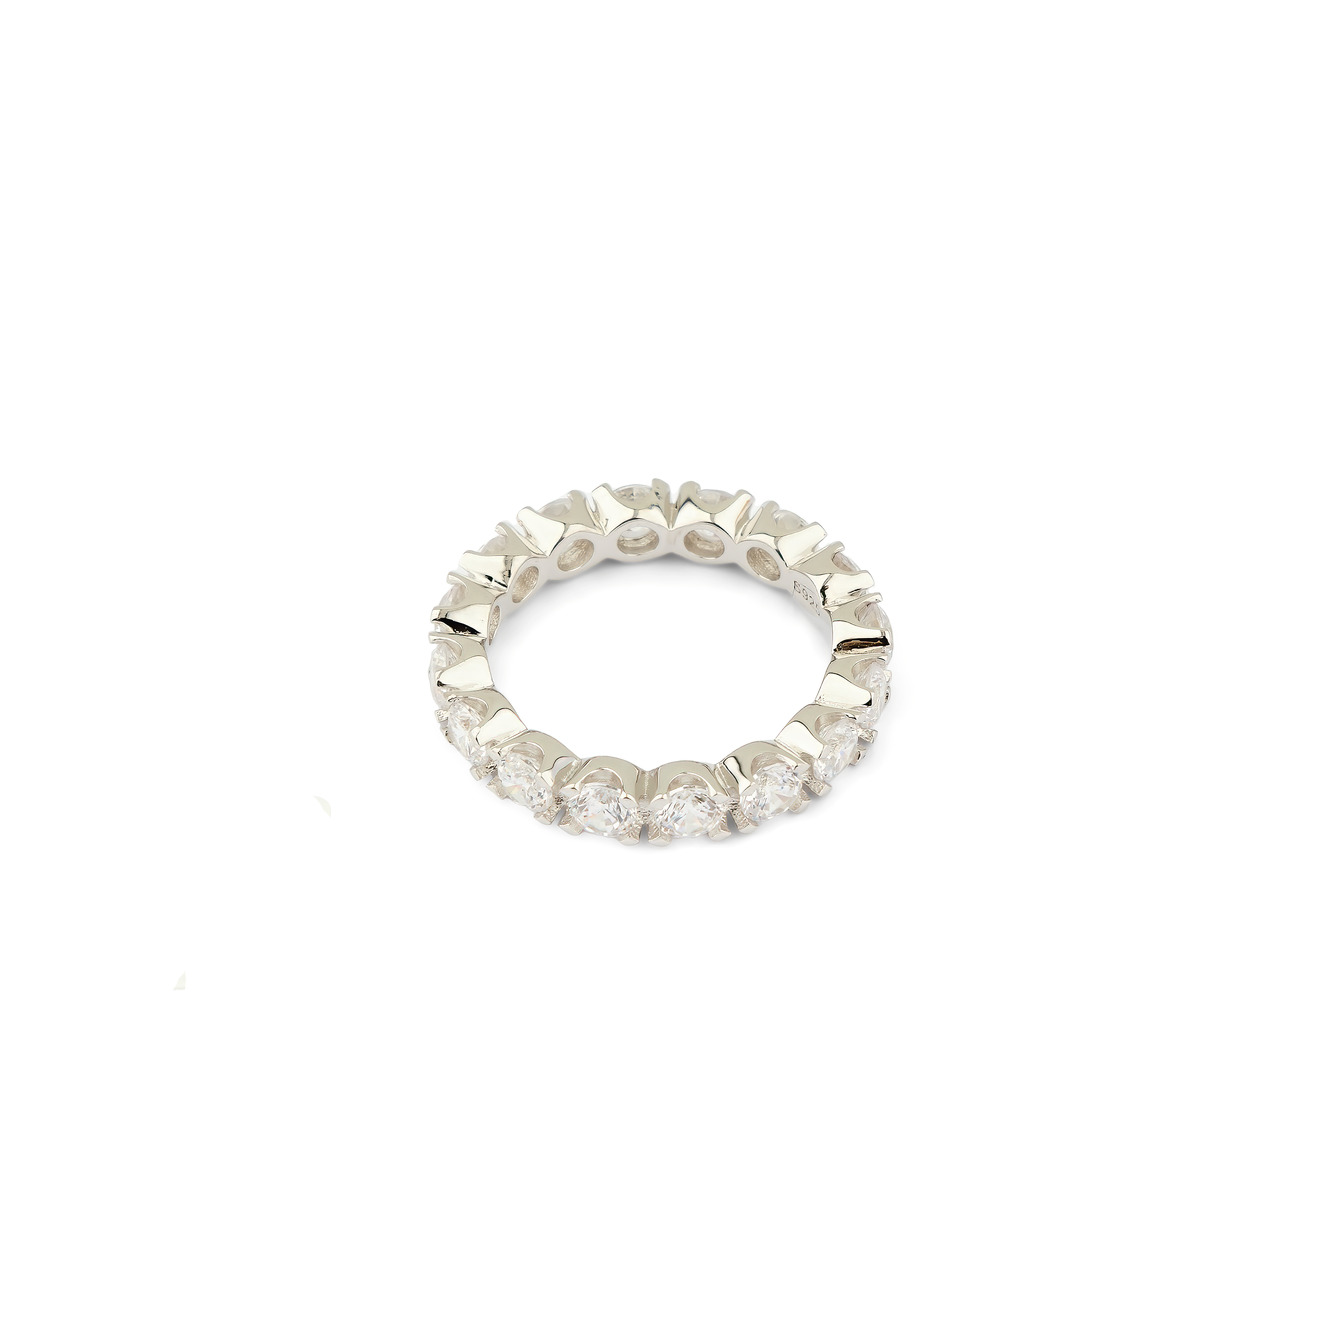 Holy Silver Тонкое кольцо из серебра с дорожкой из белых кристаллов цена и фото